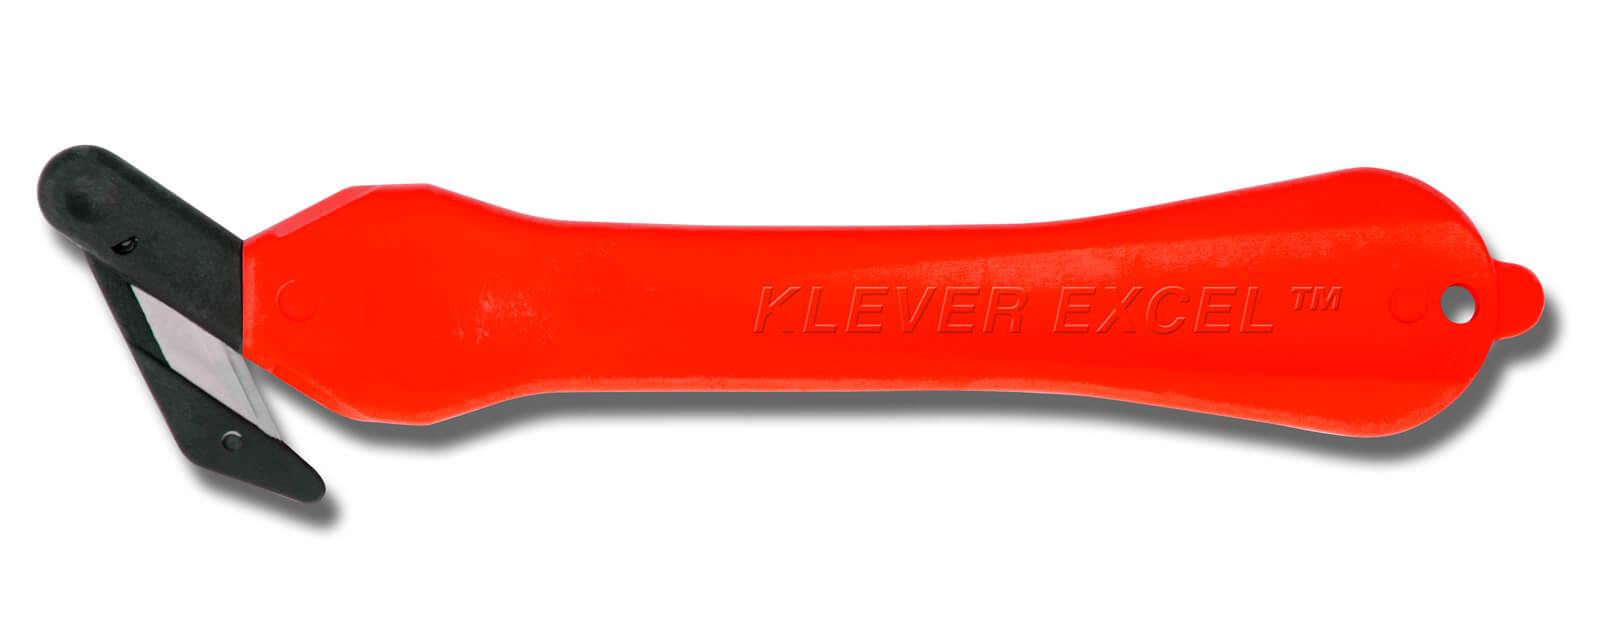 H034R-Sicherheitsmesser-Klever-Excel-rot-Breitkopf-CURT-tools